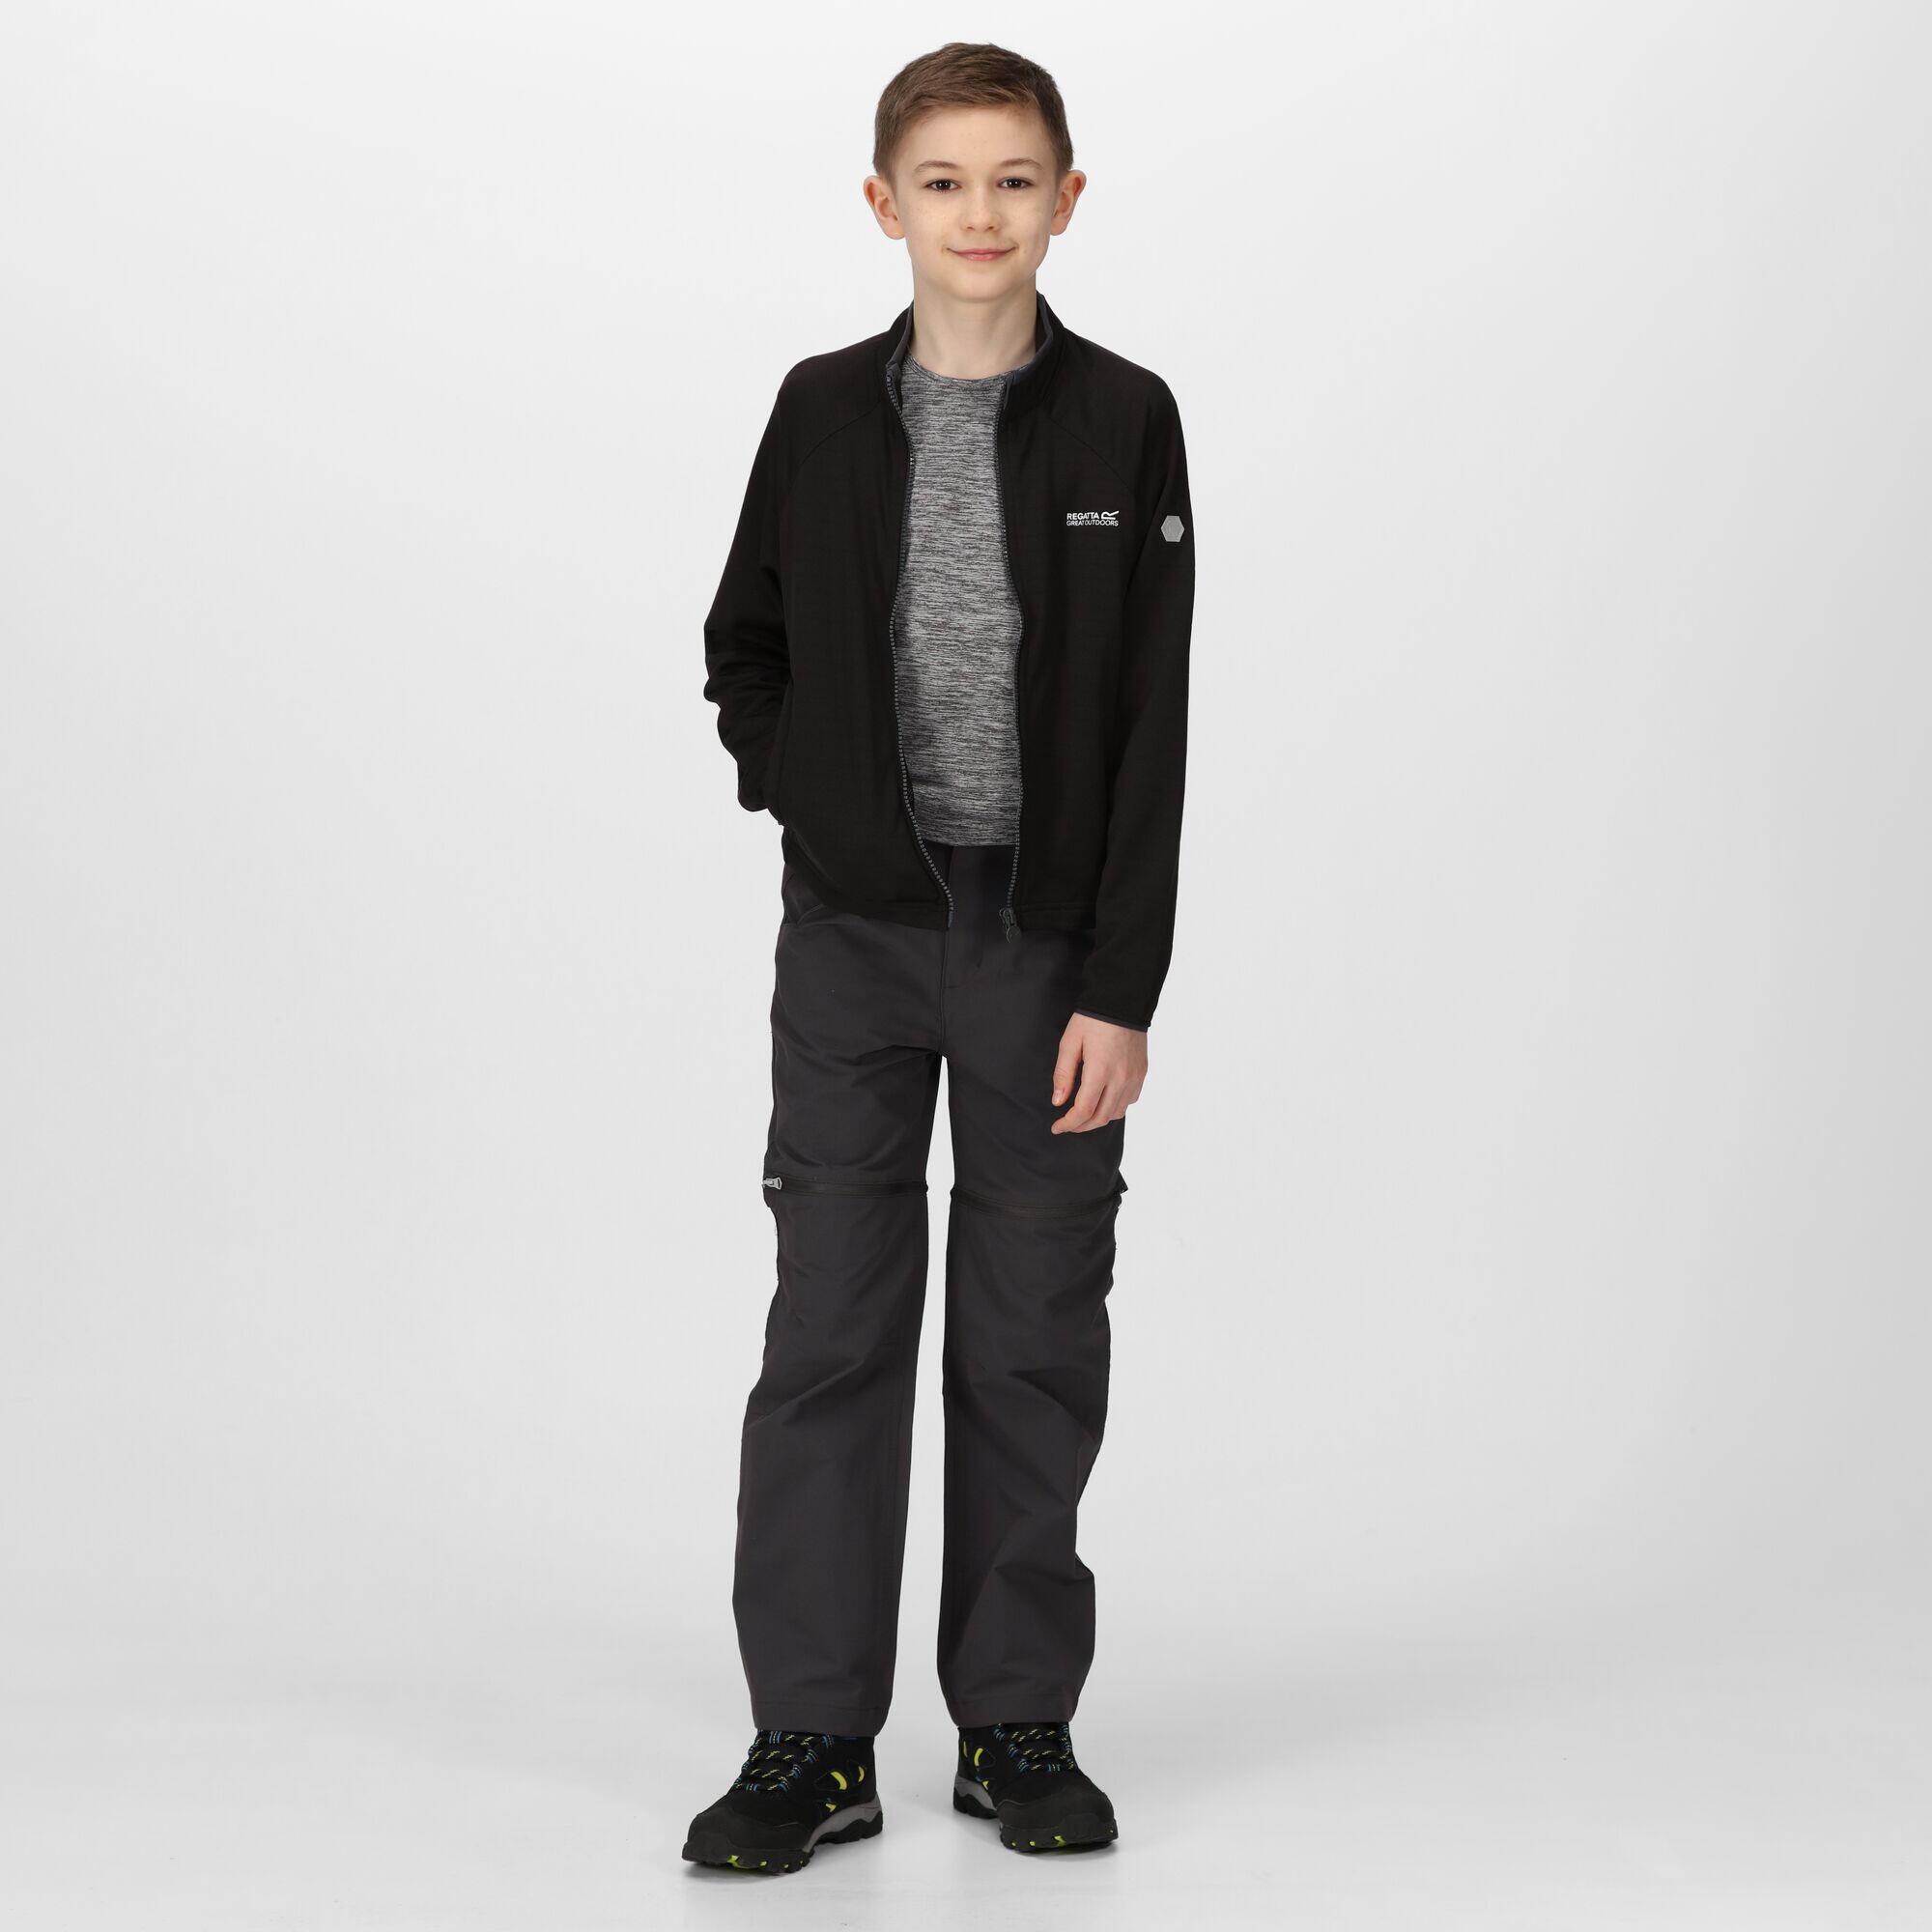 Junior Highton Lite II Walking Kids Full Zip Fleece - Black 3/6